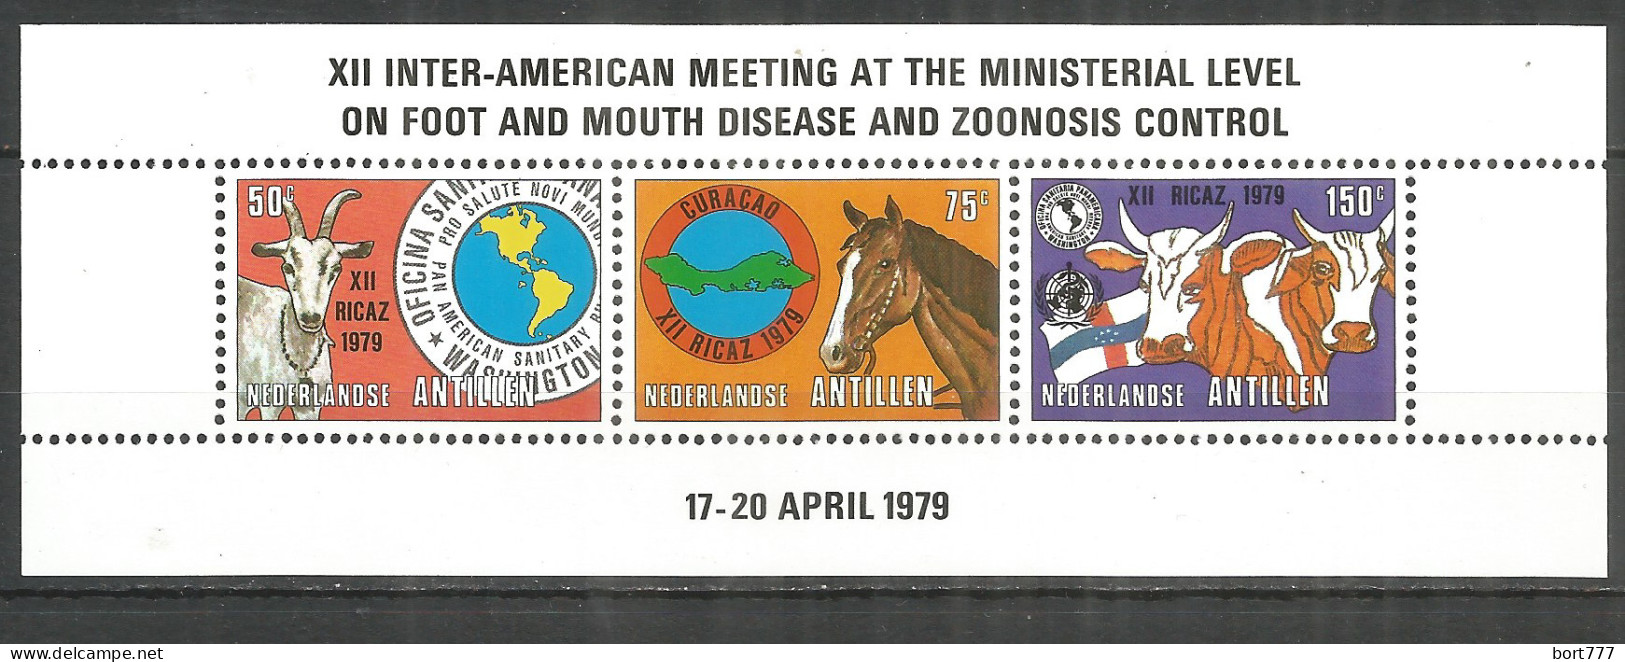 Netherlands Antilles 1979 Year, Mint Block MNH (**) Michel#blc.09 - Curacao, Netherlands Antilles, Aruba